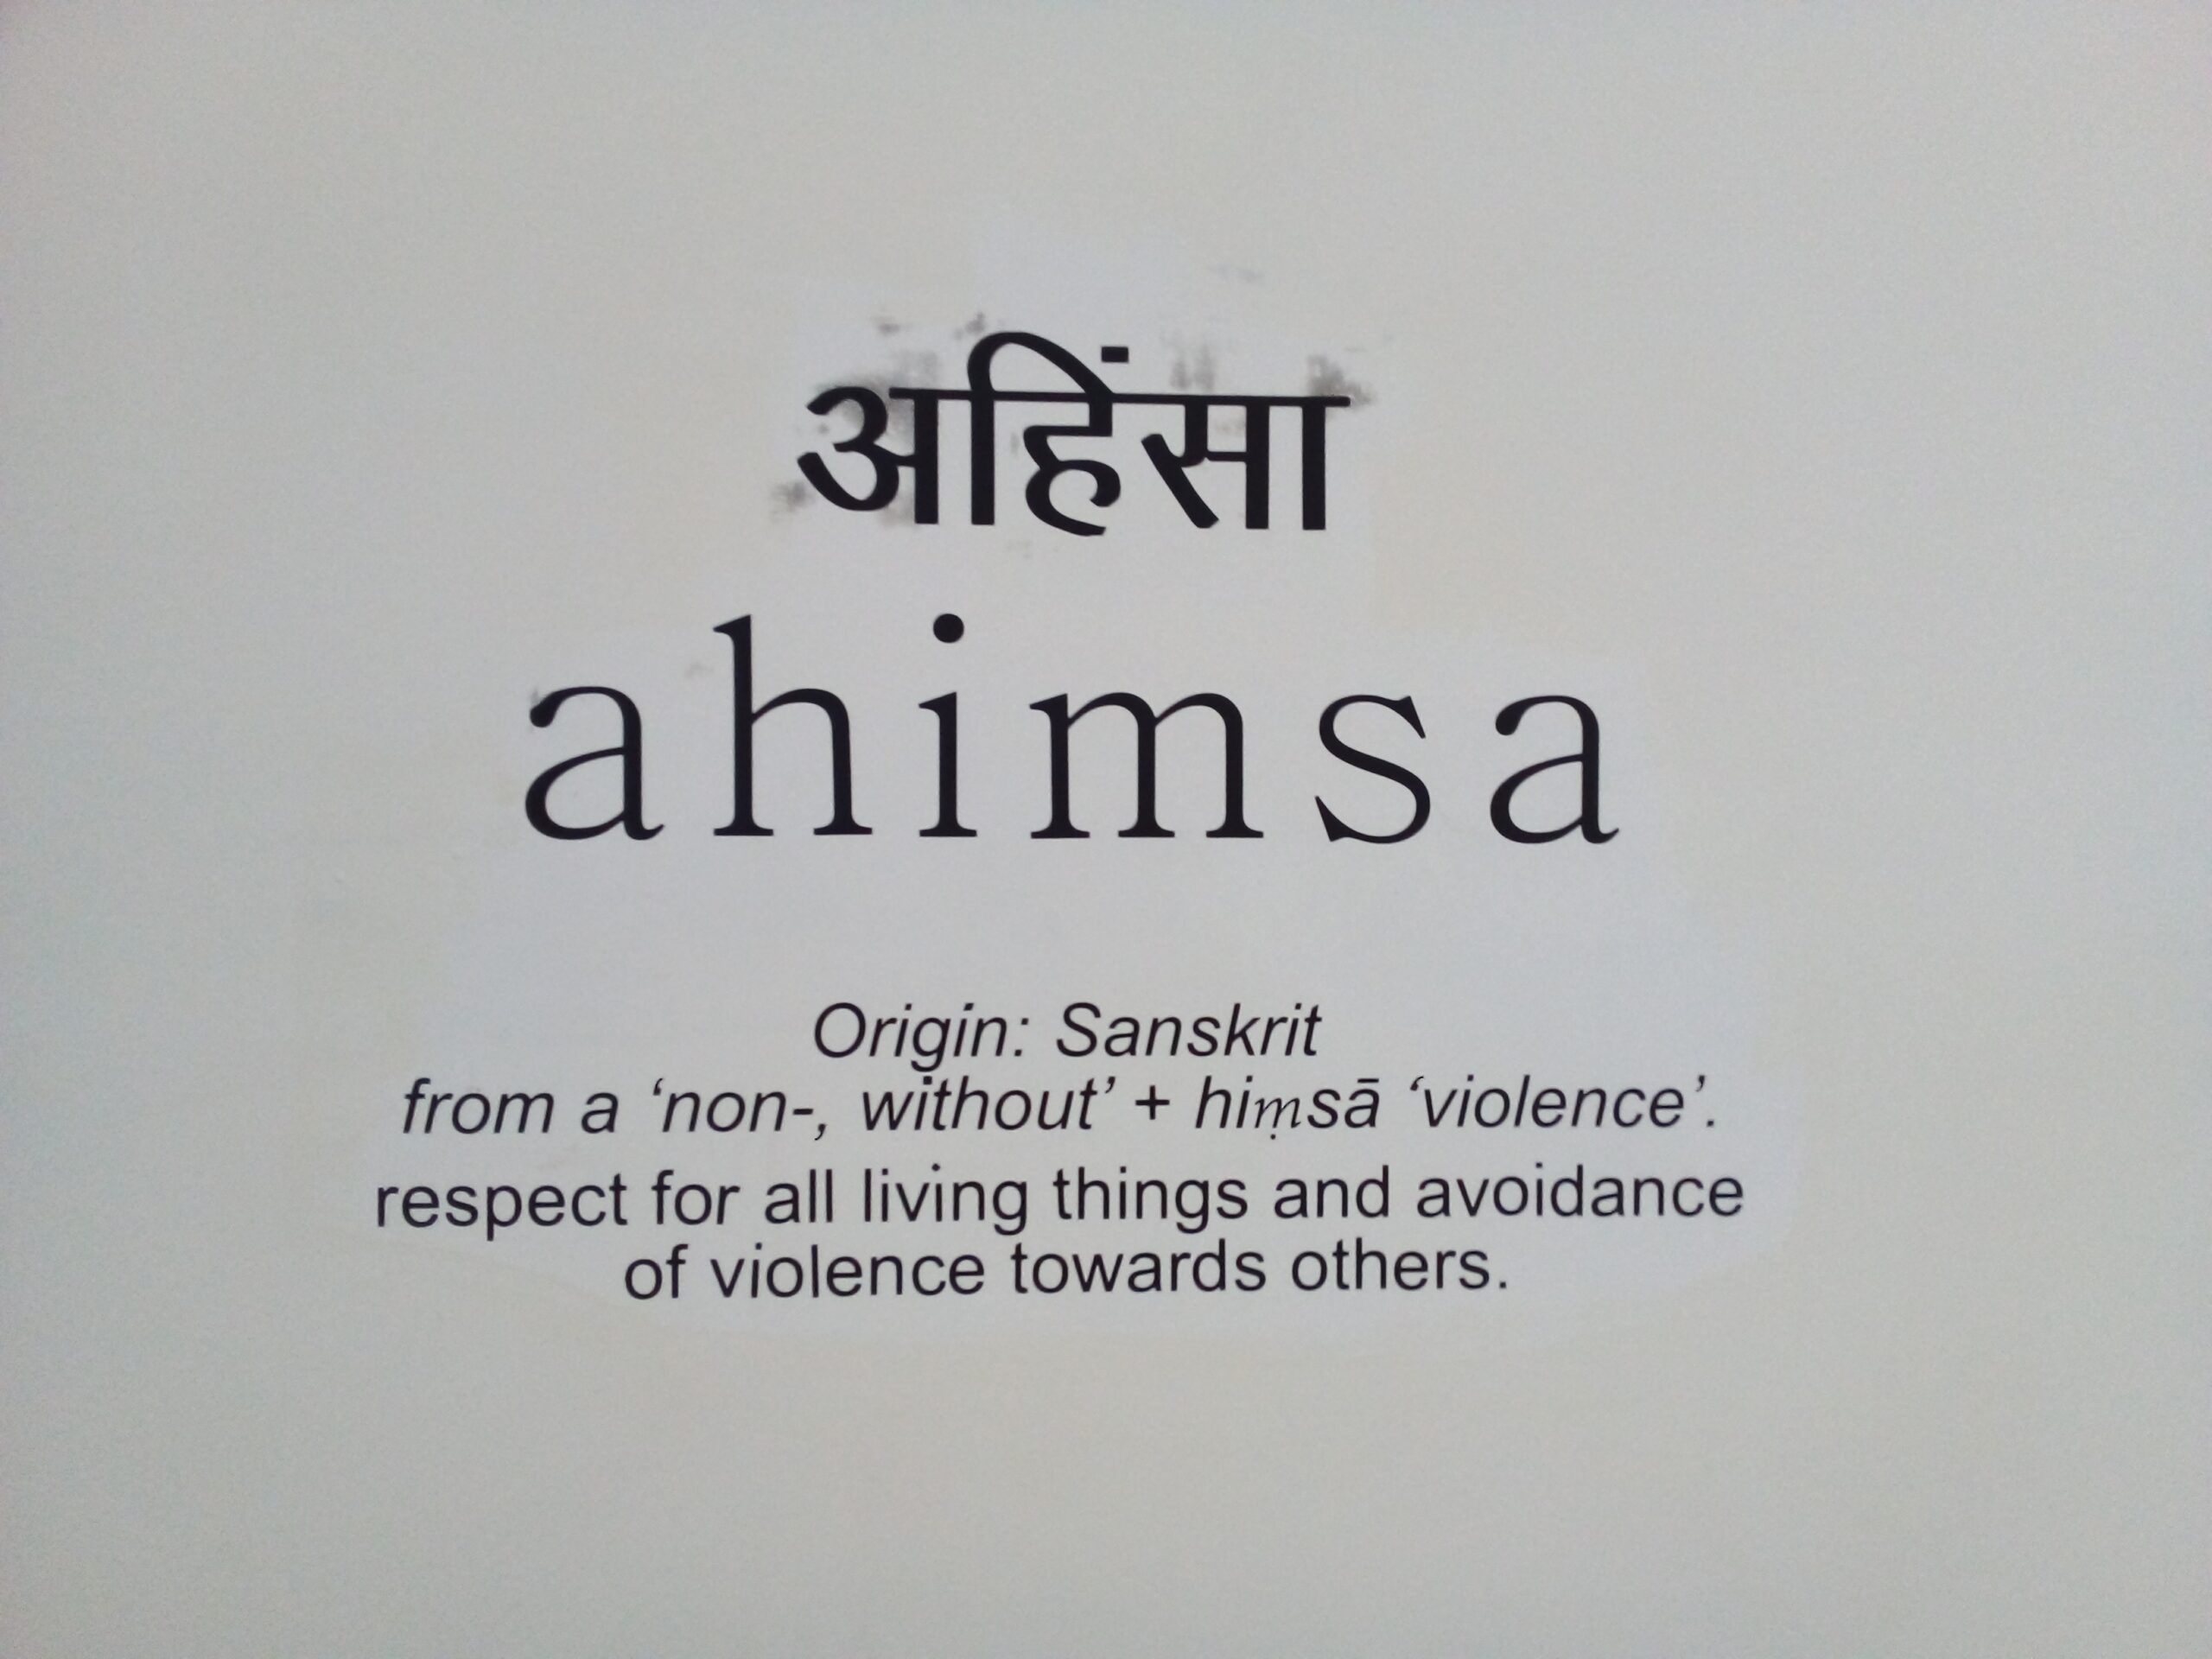 Ahinsa (Hindi), Ahimsa (Sanskrit) and its Meaning in English